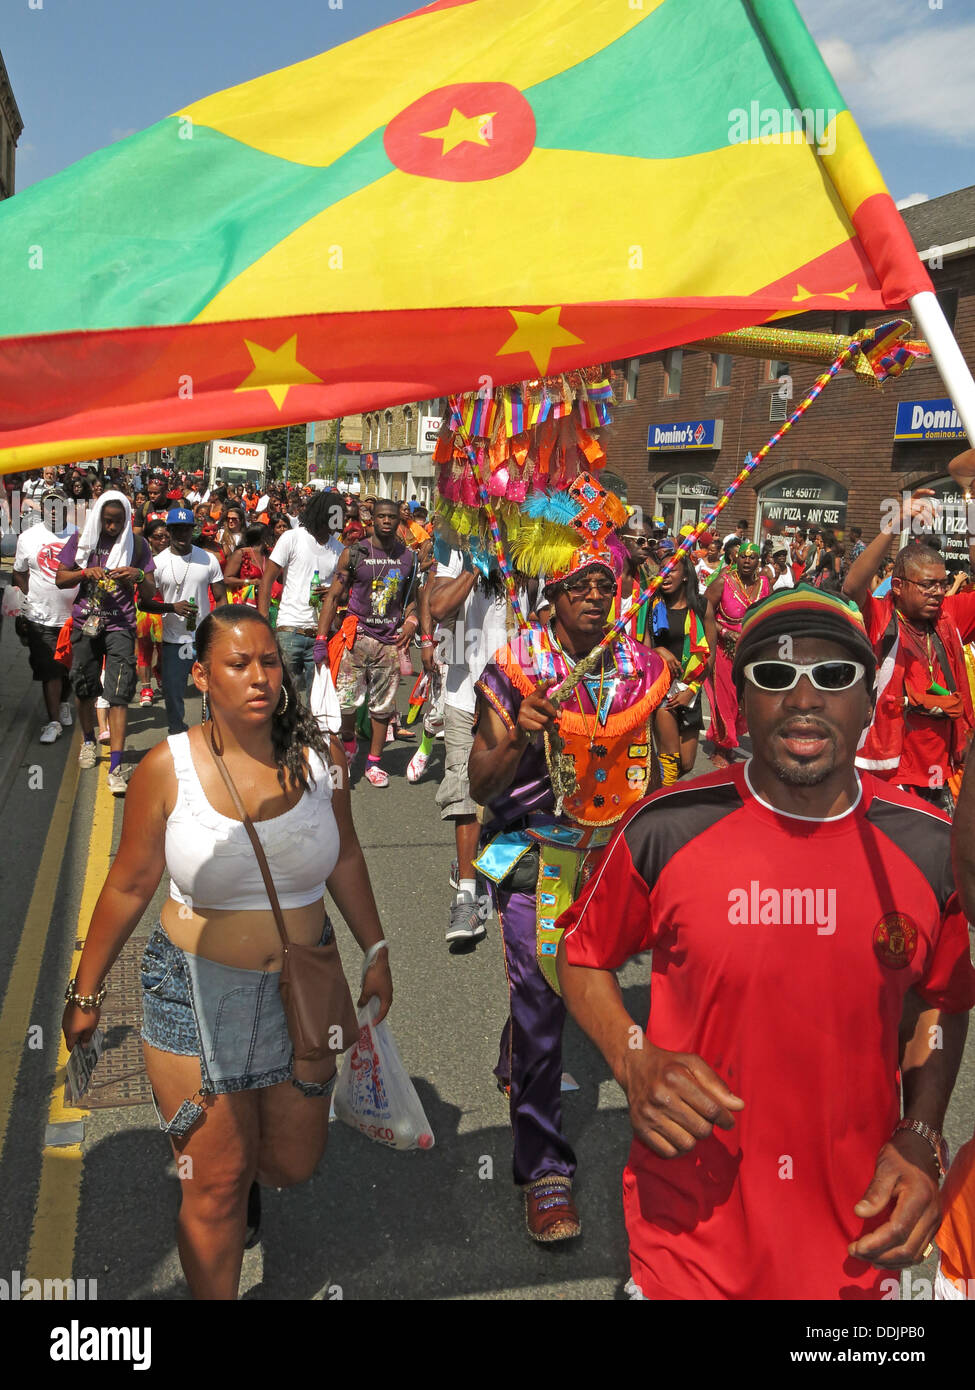 Danseurs costumés tenant un drapeau de Huddersfield Carnival parade 2013 fête de rue Africains des Caraïbes Banque D'Images